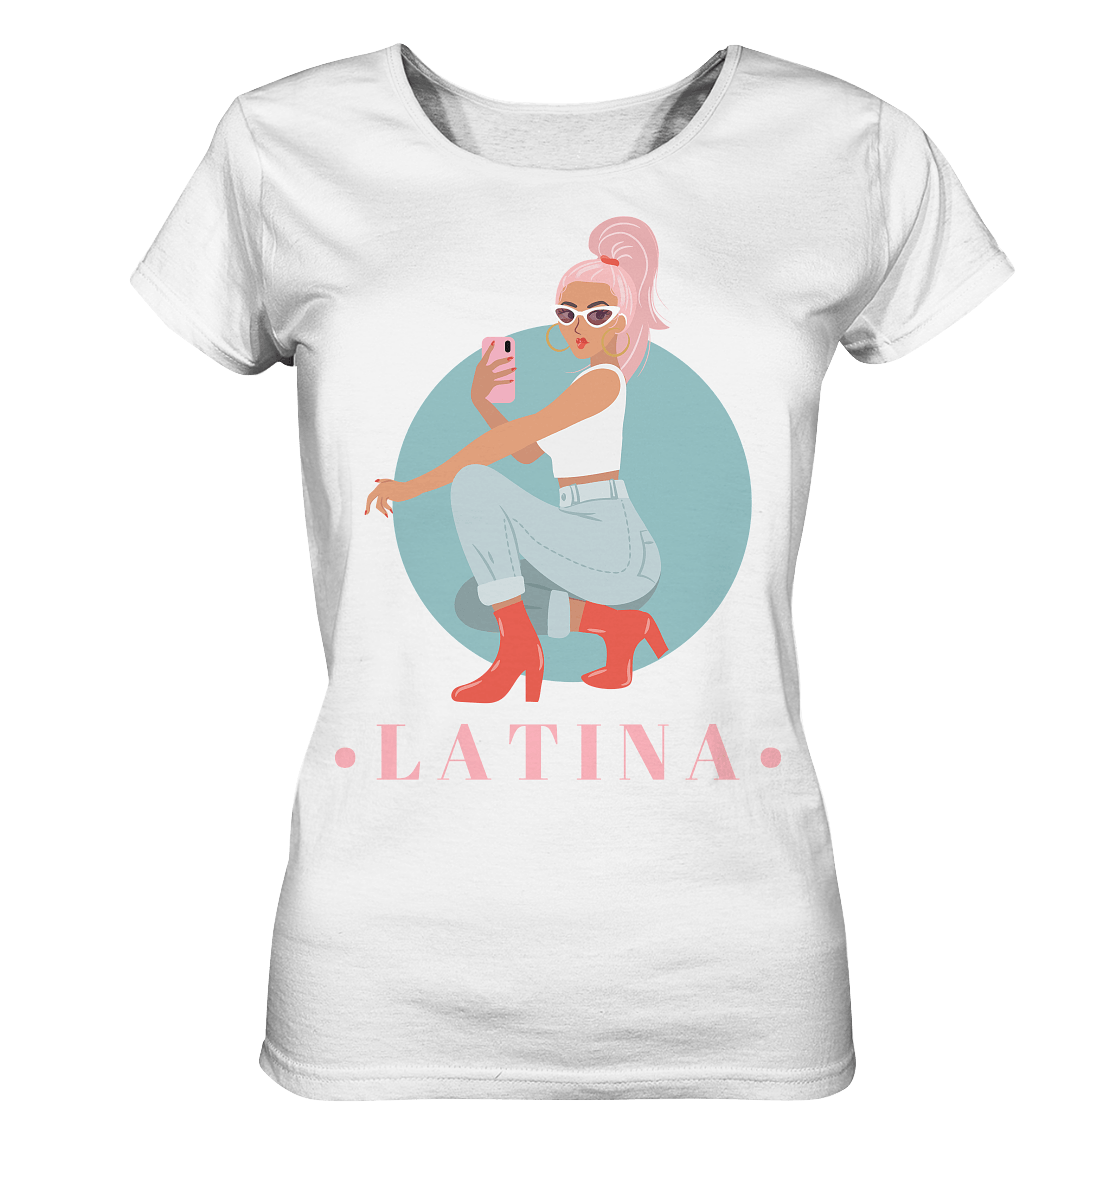 Latina Damen Shirt in weiß mit Latina girl Print